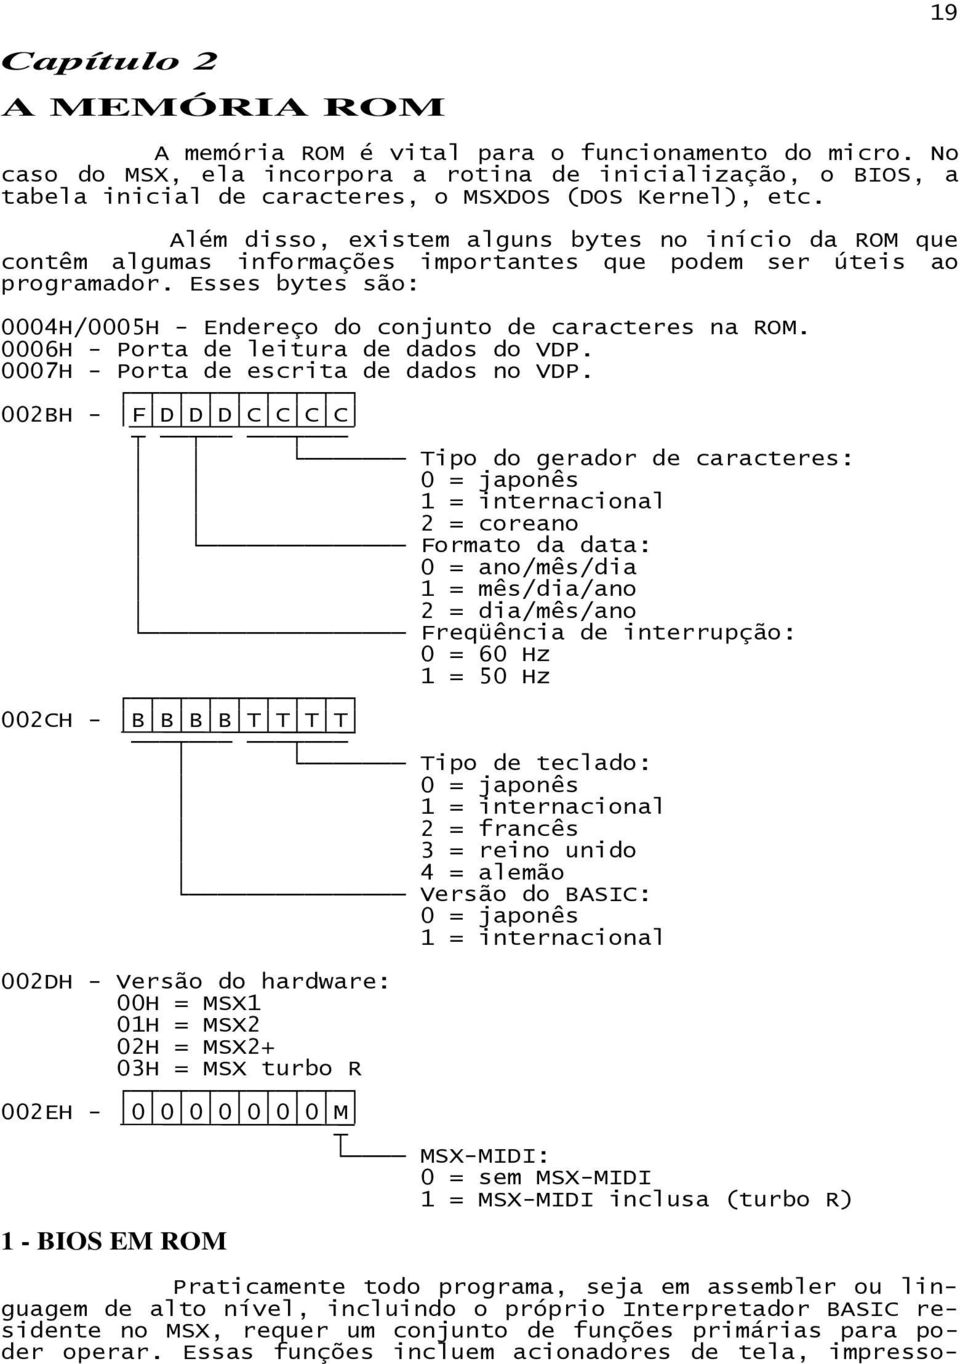 Além disso, existem alguns bytes no início da ROM que contêm algumas informações importantes que podem ser úteis ao programador.